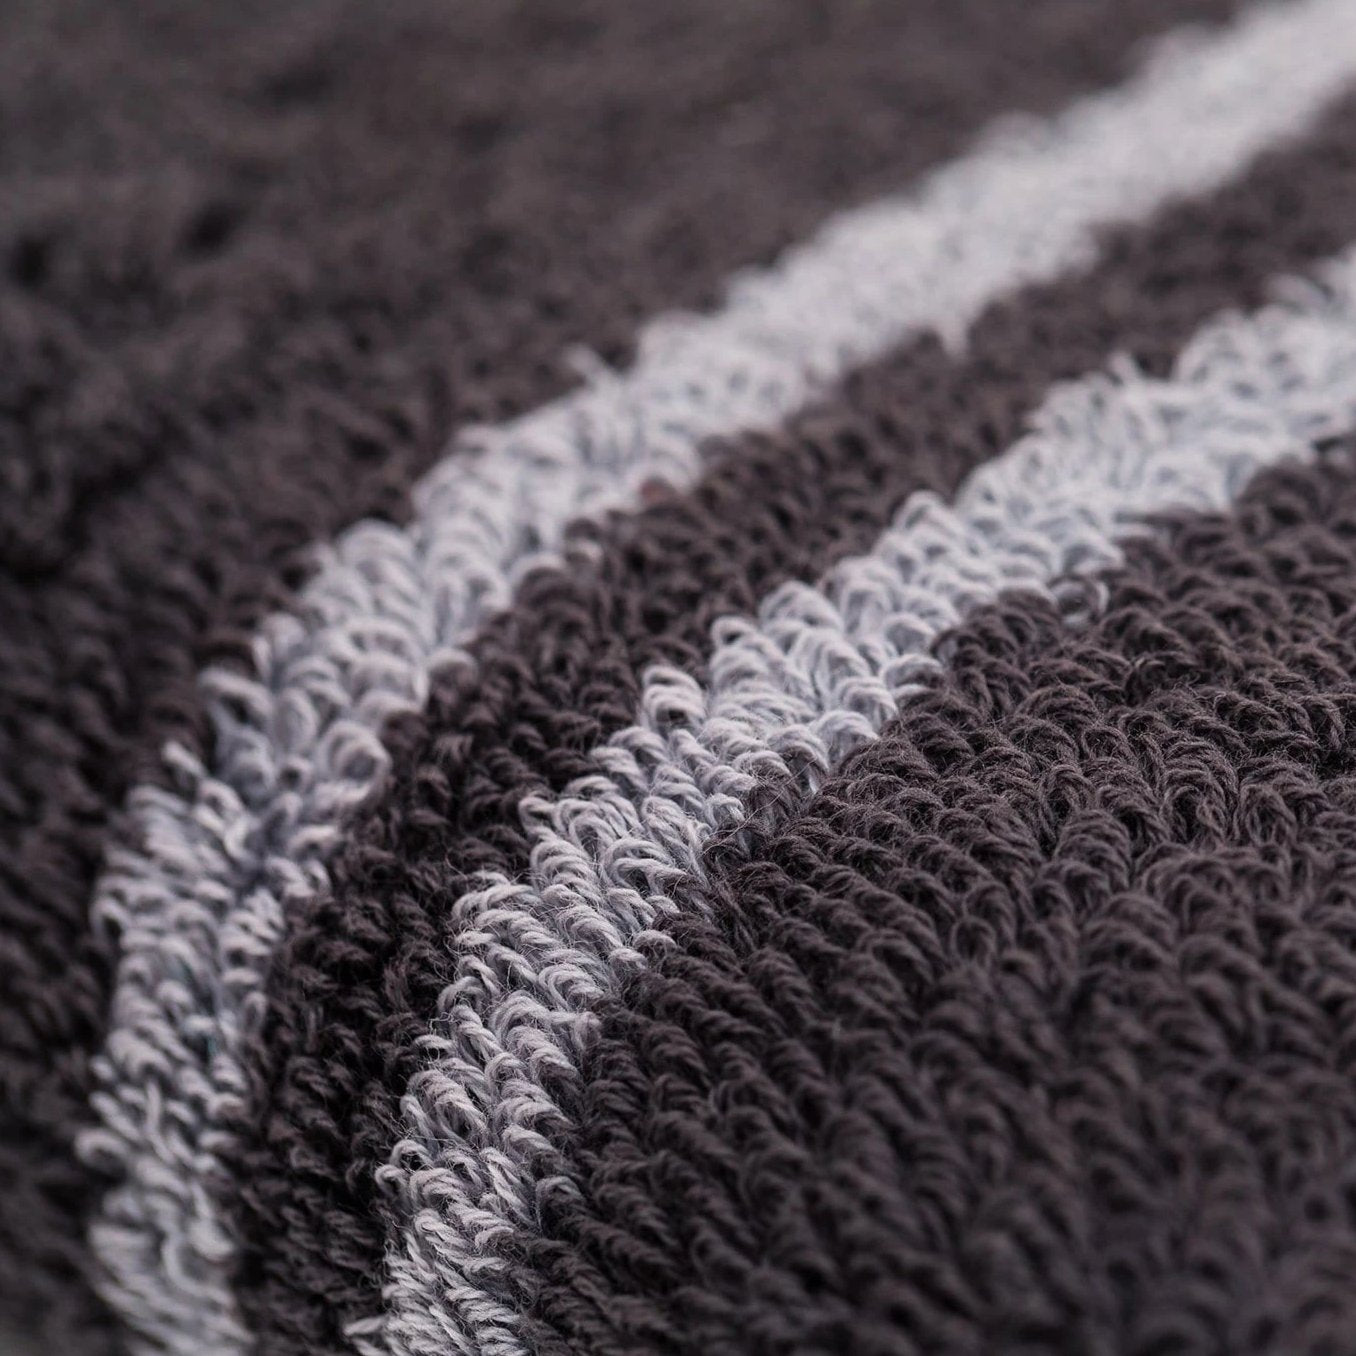 Mizu Antibacterial Towels - Silver Infused Towels - 2x Smart Towel Set